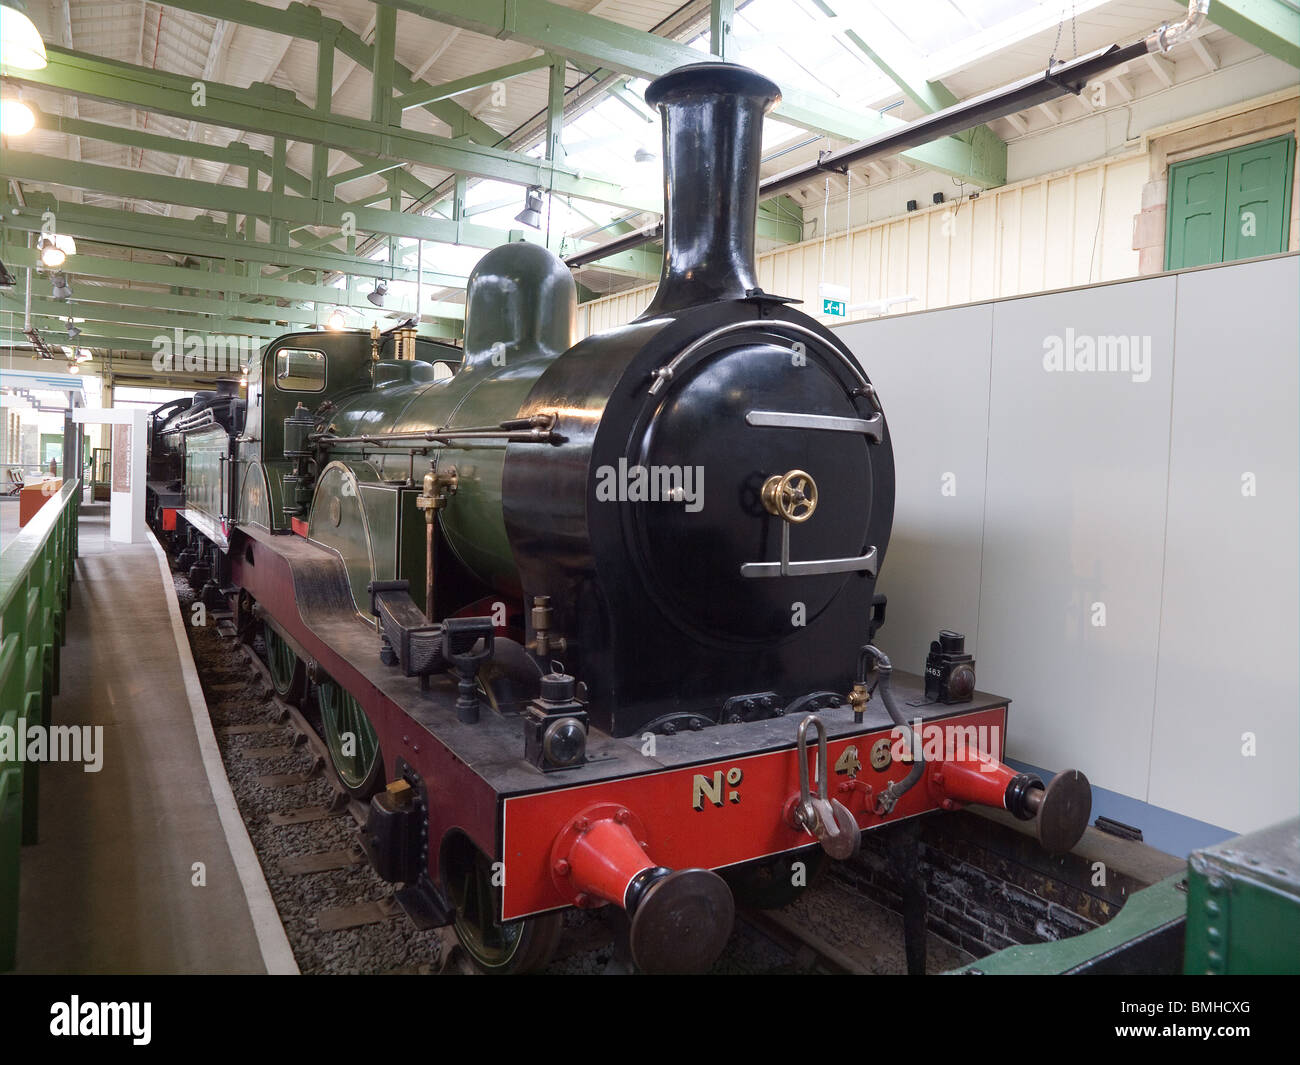 North Eastern Railway locomotive à vapeur 2-4-0 nombre de passagers 1463 construit en 1885 montre l'installation de Steam Museum Banque D'Images